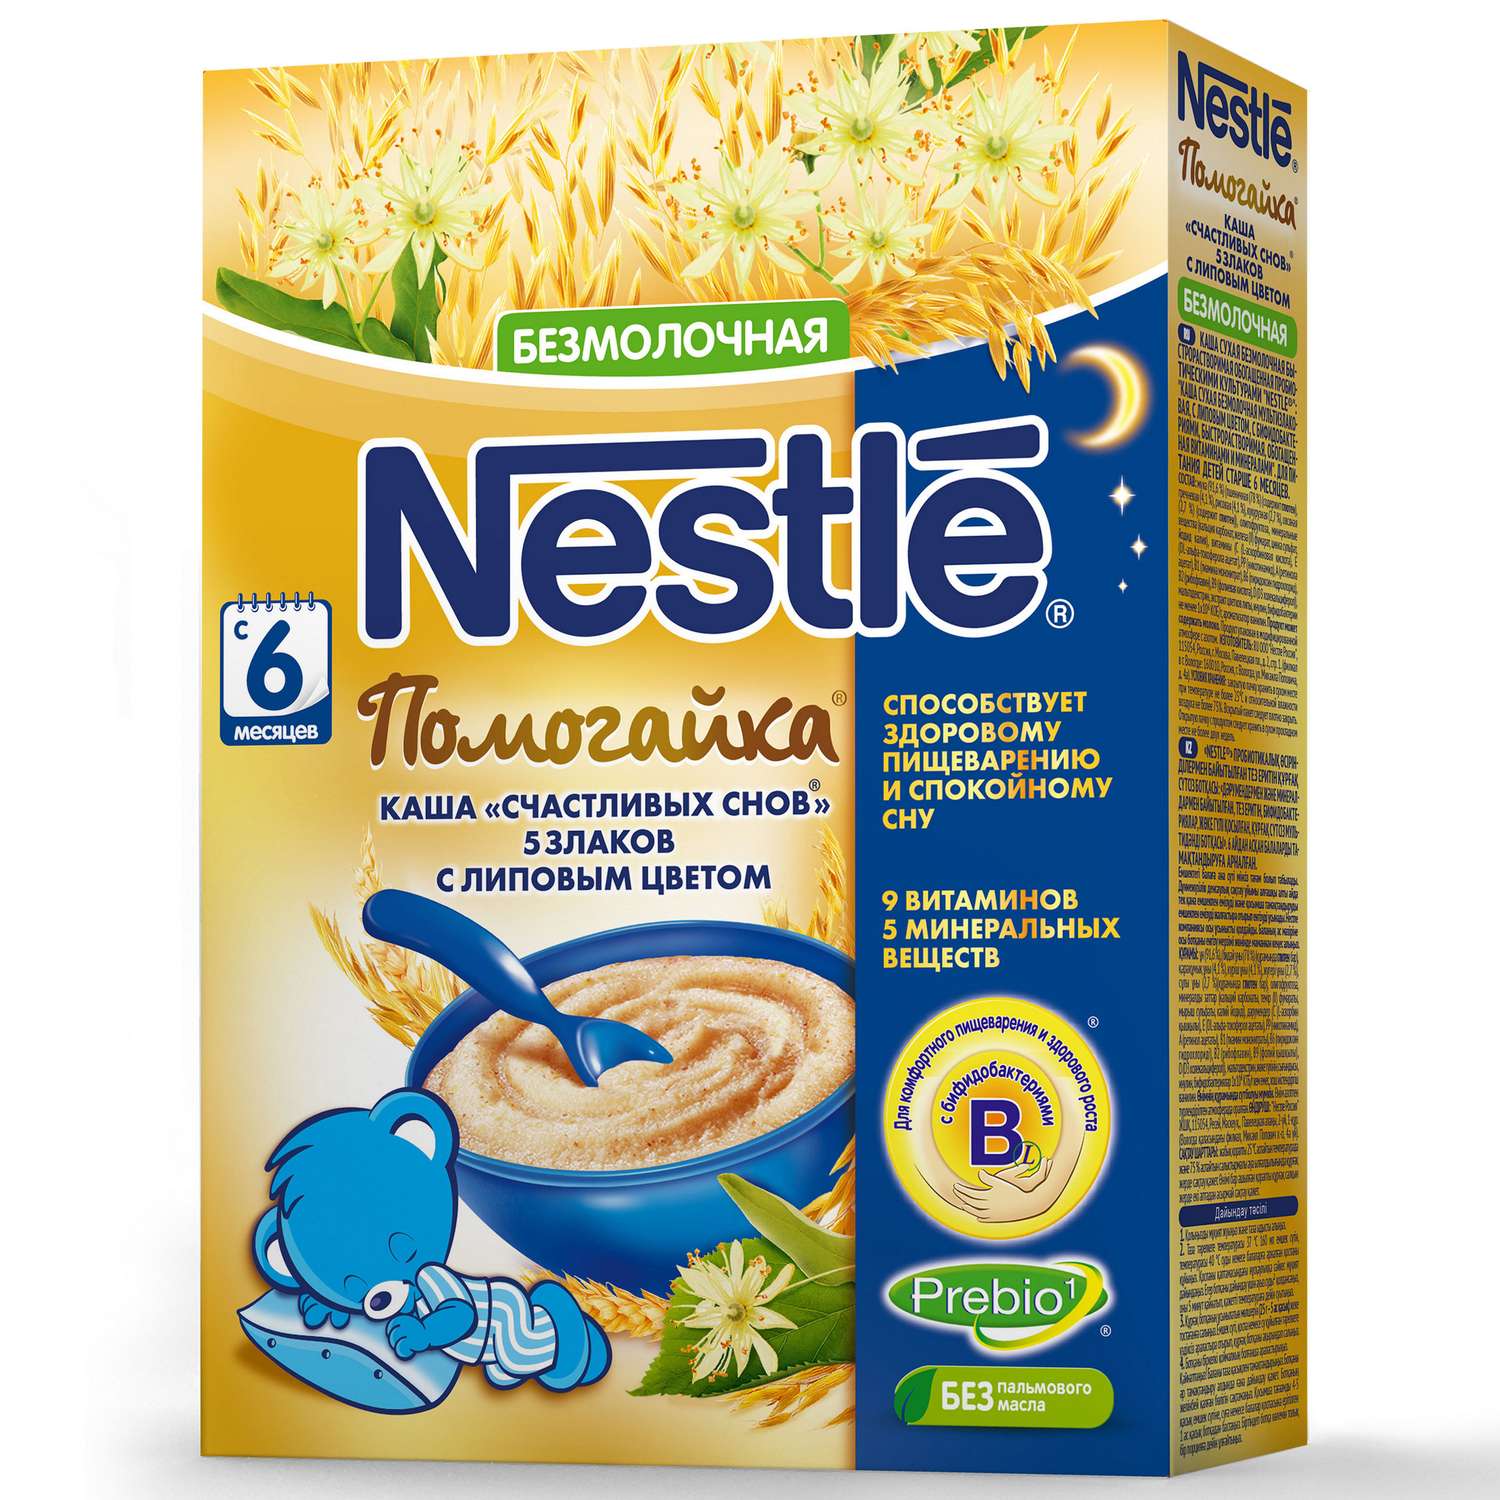 Каша Nestle Помогайка 5 злаков с липовым цветом 200г - фото 1